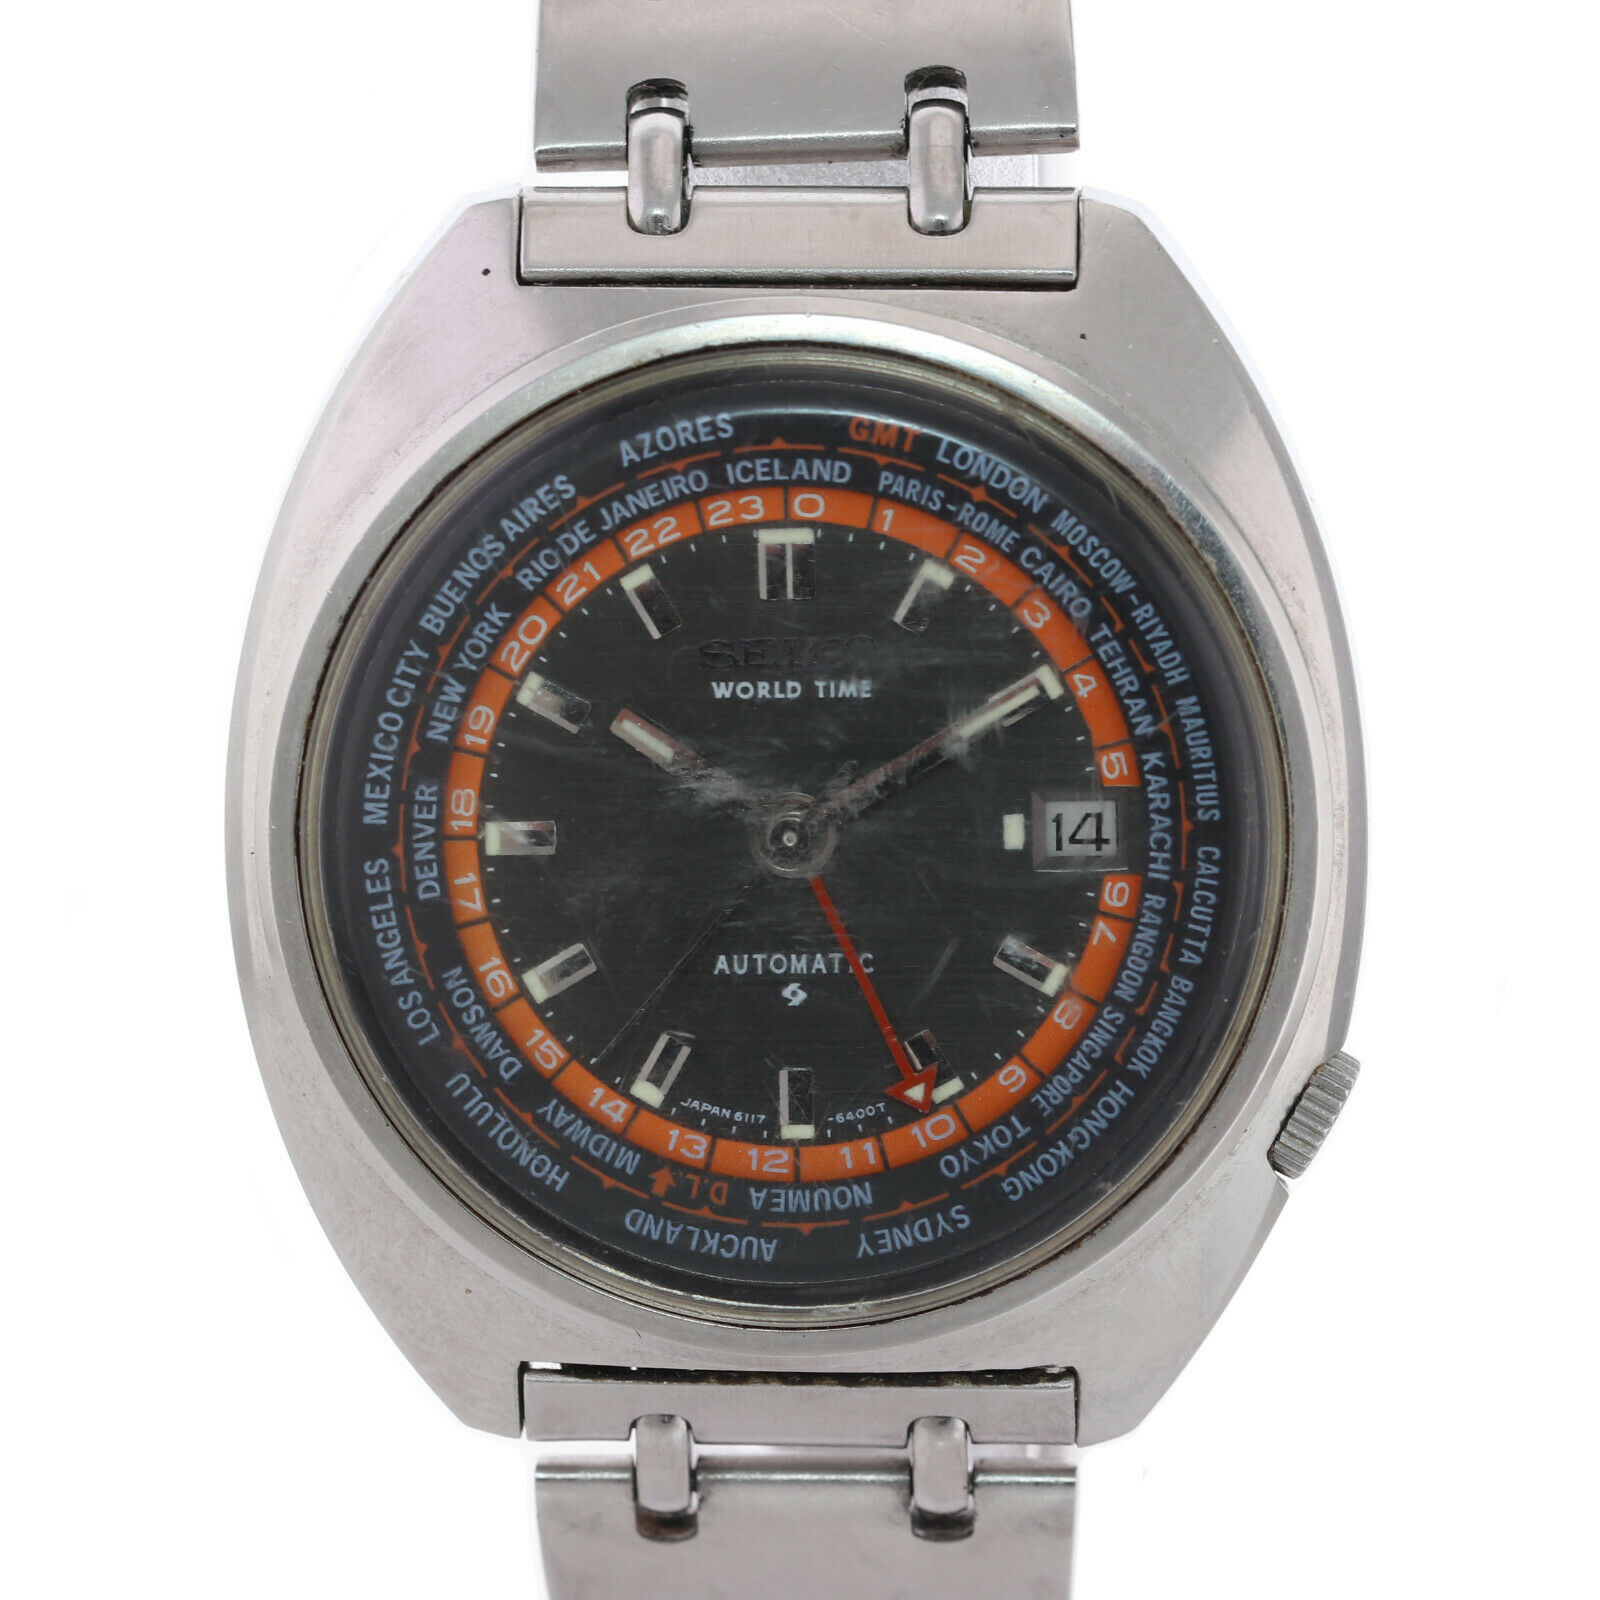 Seiko World Time GMT (6117-6400) Market Price | WatchCharts